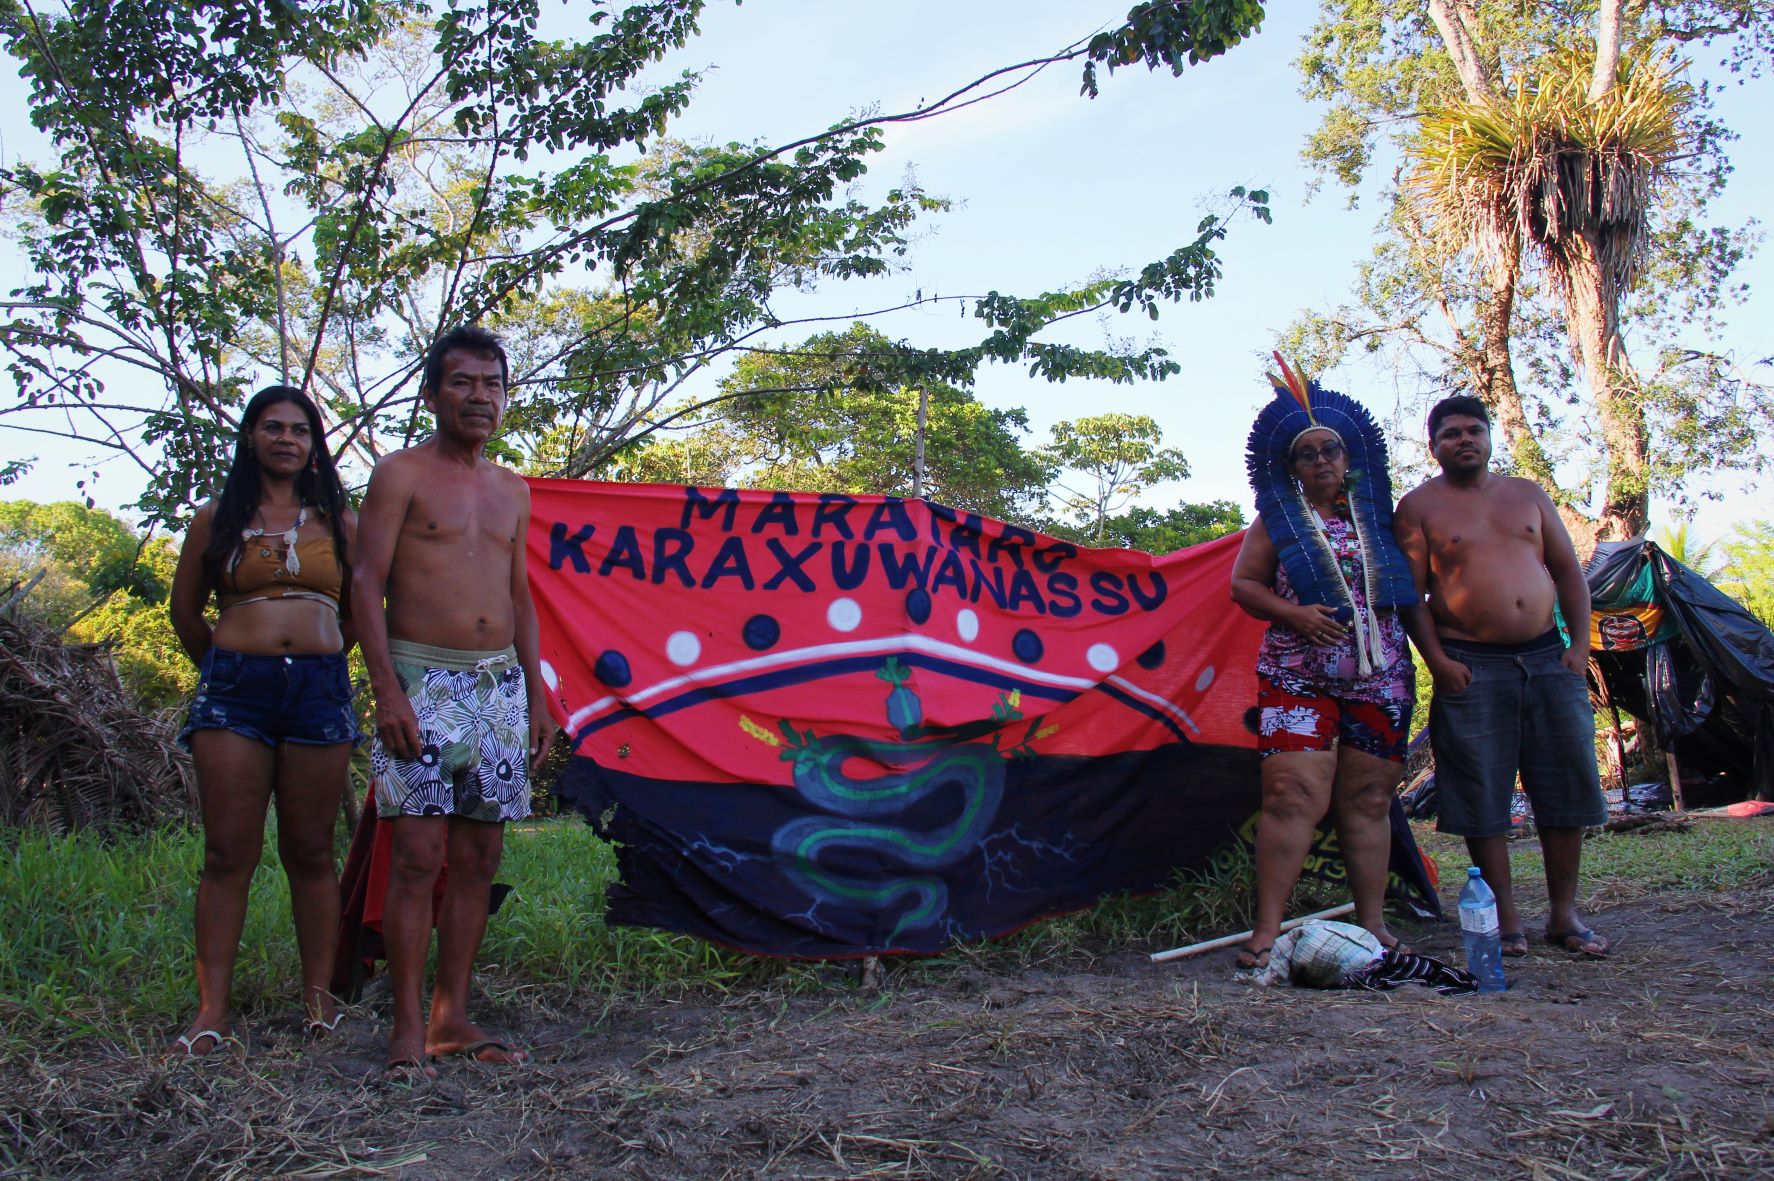 Indígenas na área ocupada em Igarassu, Pernambuco: busca por território livre de perseguições e preconceitos (Foto: Adriano Alves)